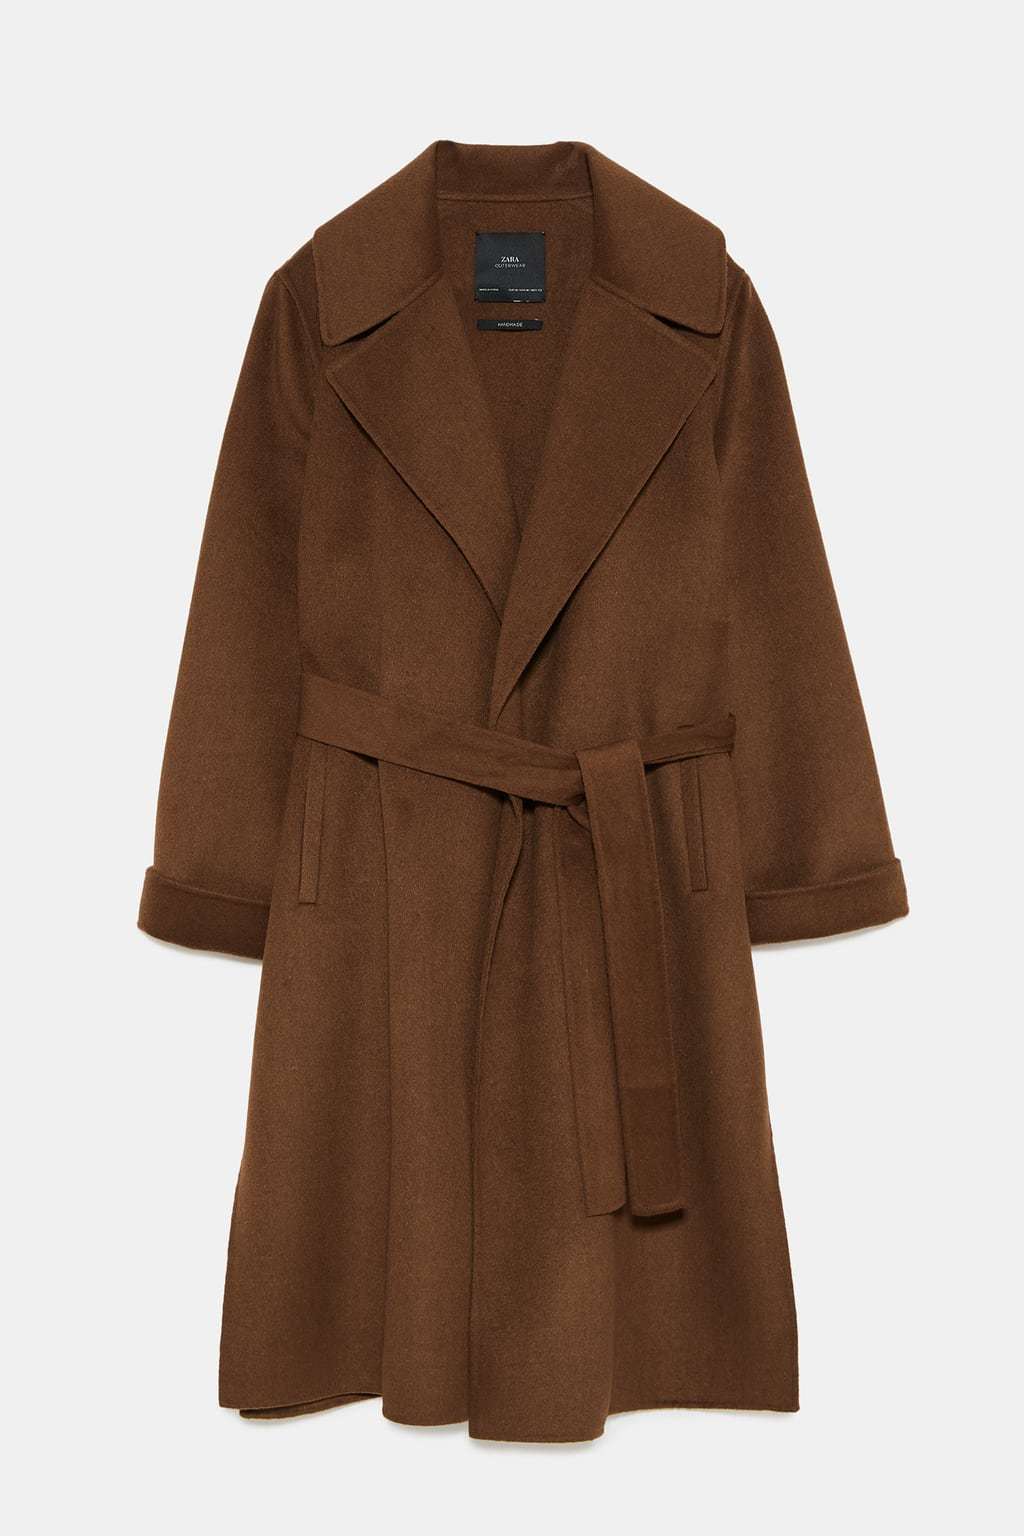 Abrigo de lana, de Zara (79,99 euros)